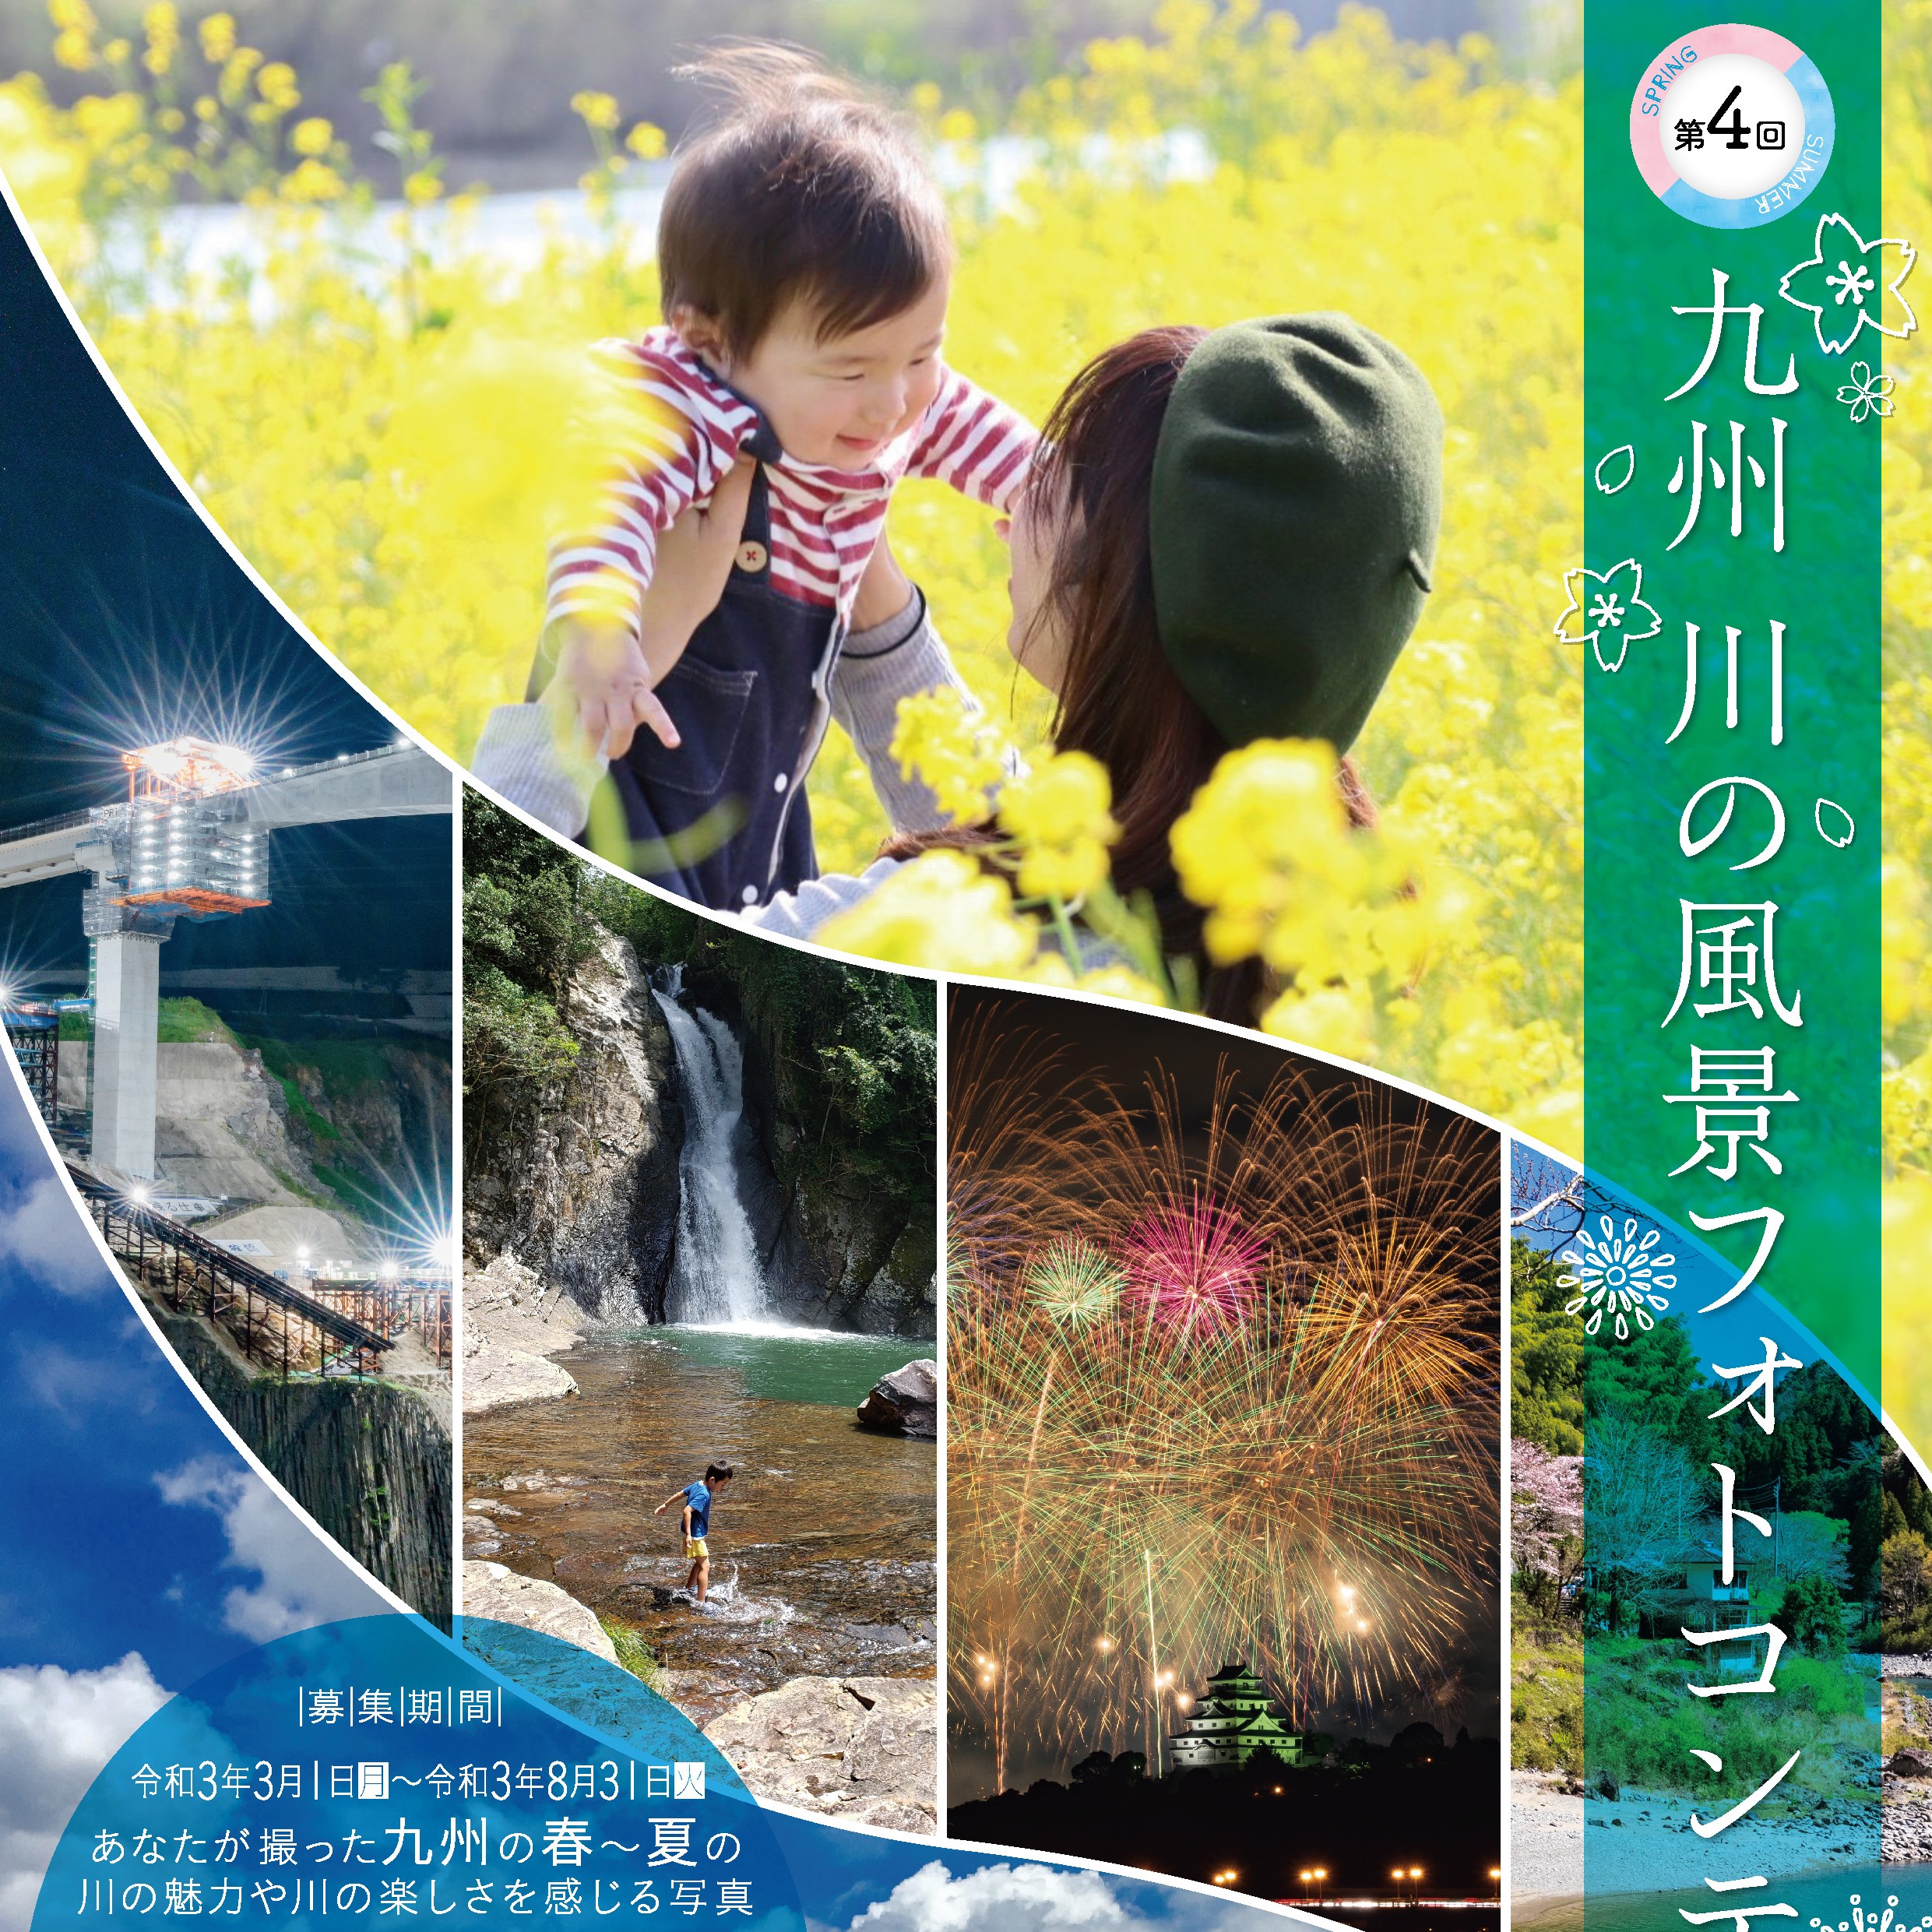 「第4回九州川の風景フォトコンテスト」の募集がはじまりました！